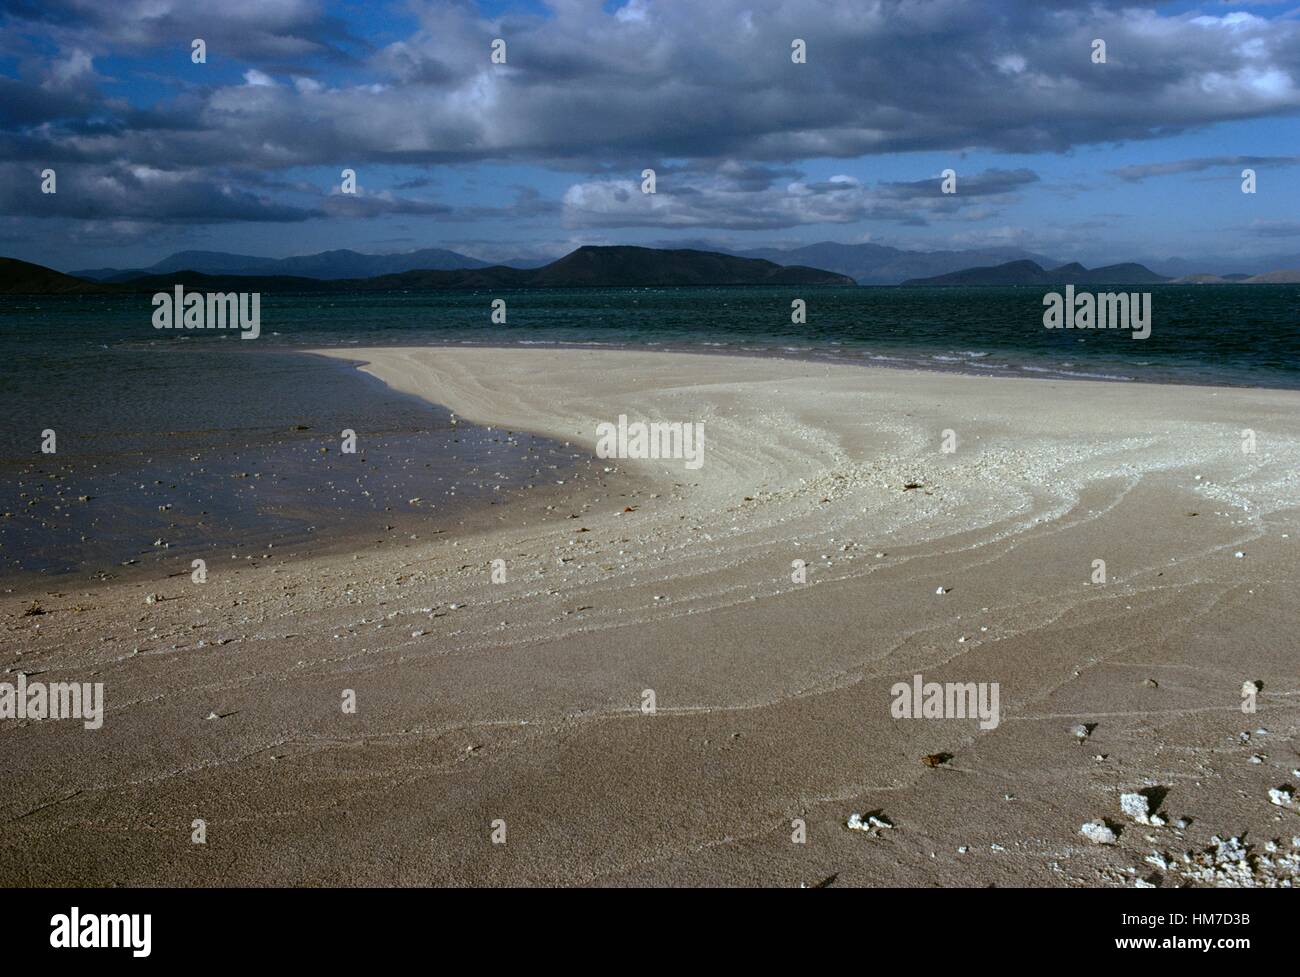 La barre de sable, la baie de St Vincent, la Nouvelle Calédonie, territoire d'outre-mer de la République française. Banque D'Images